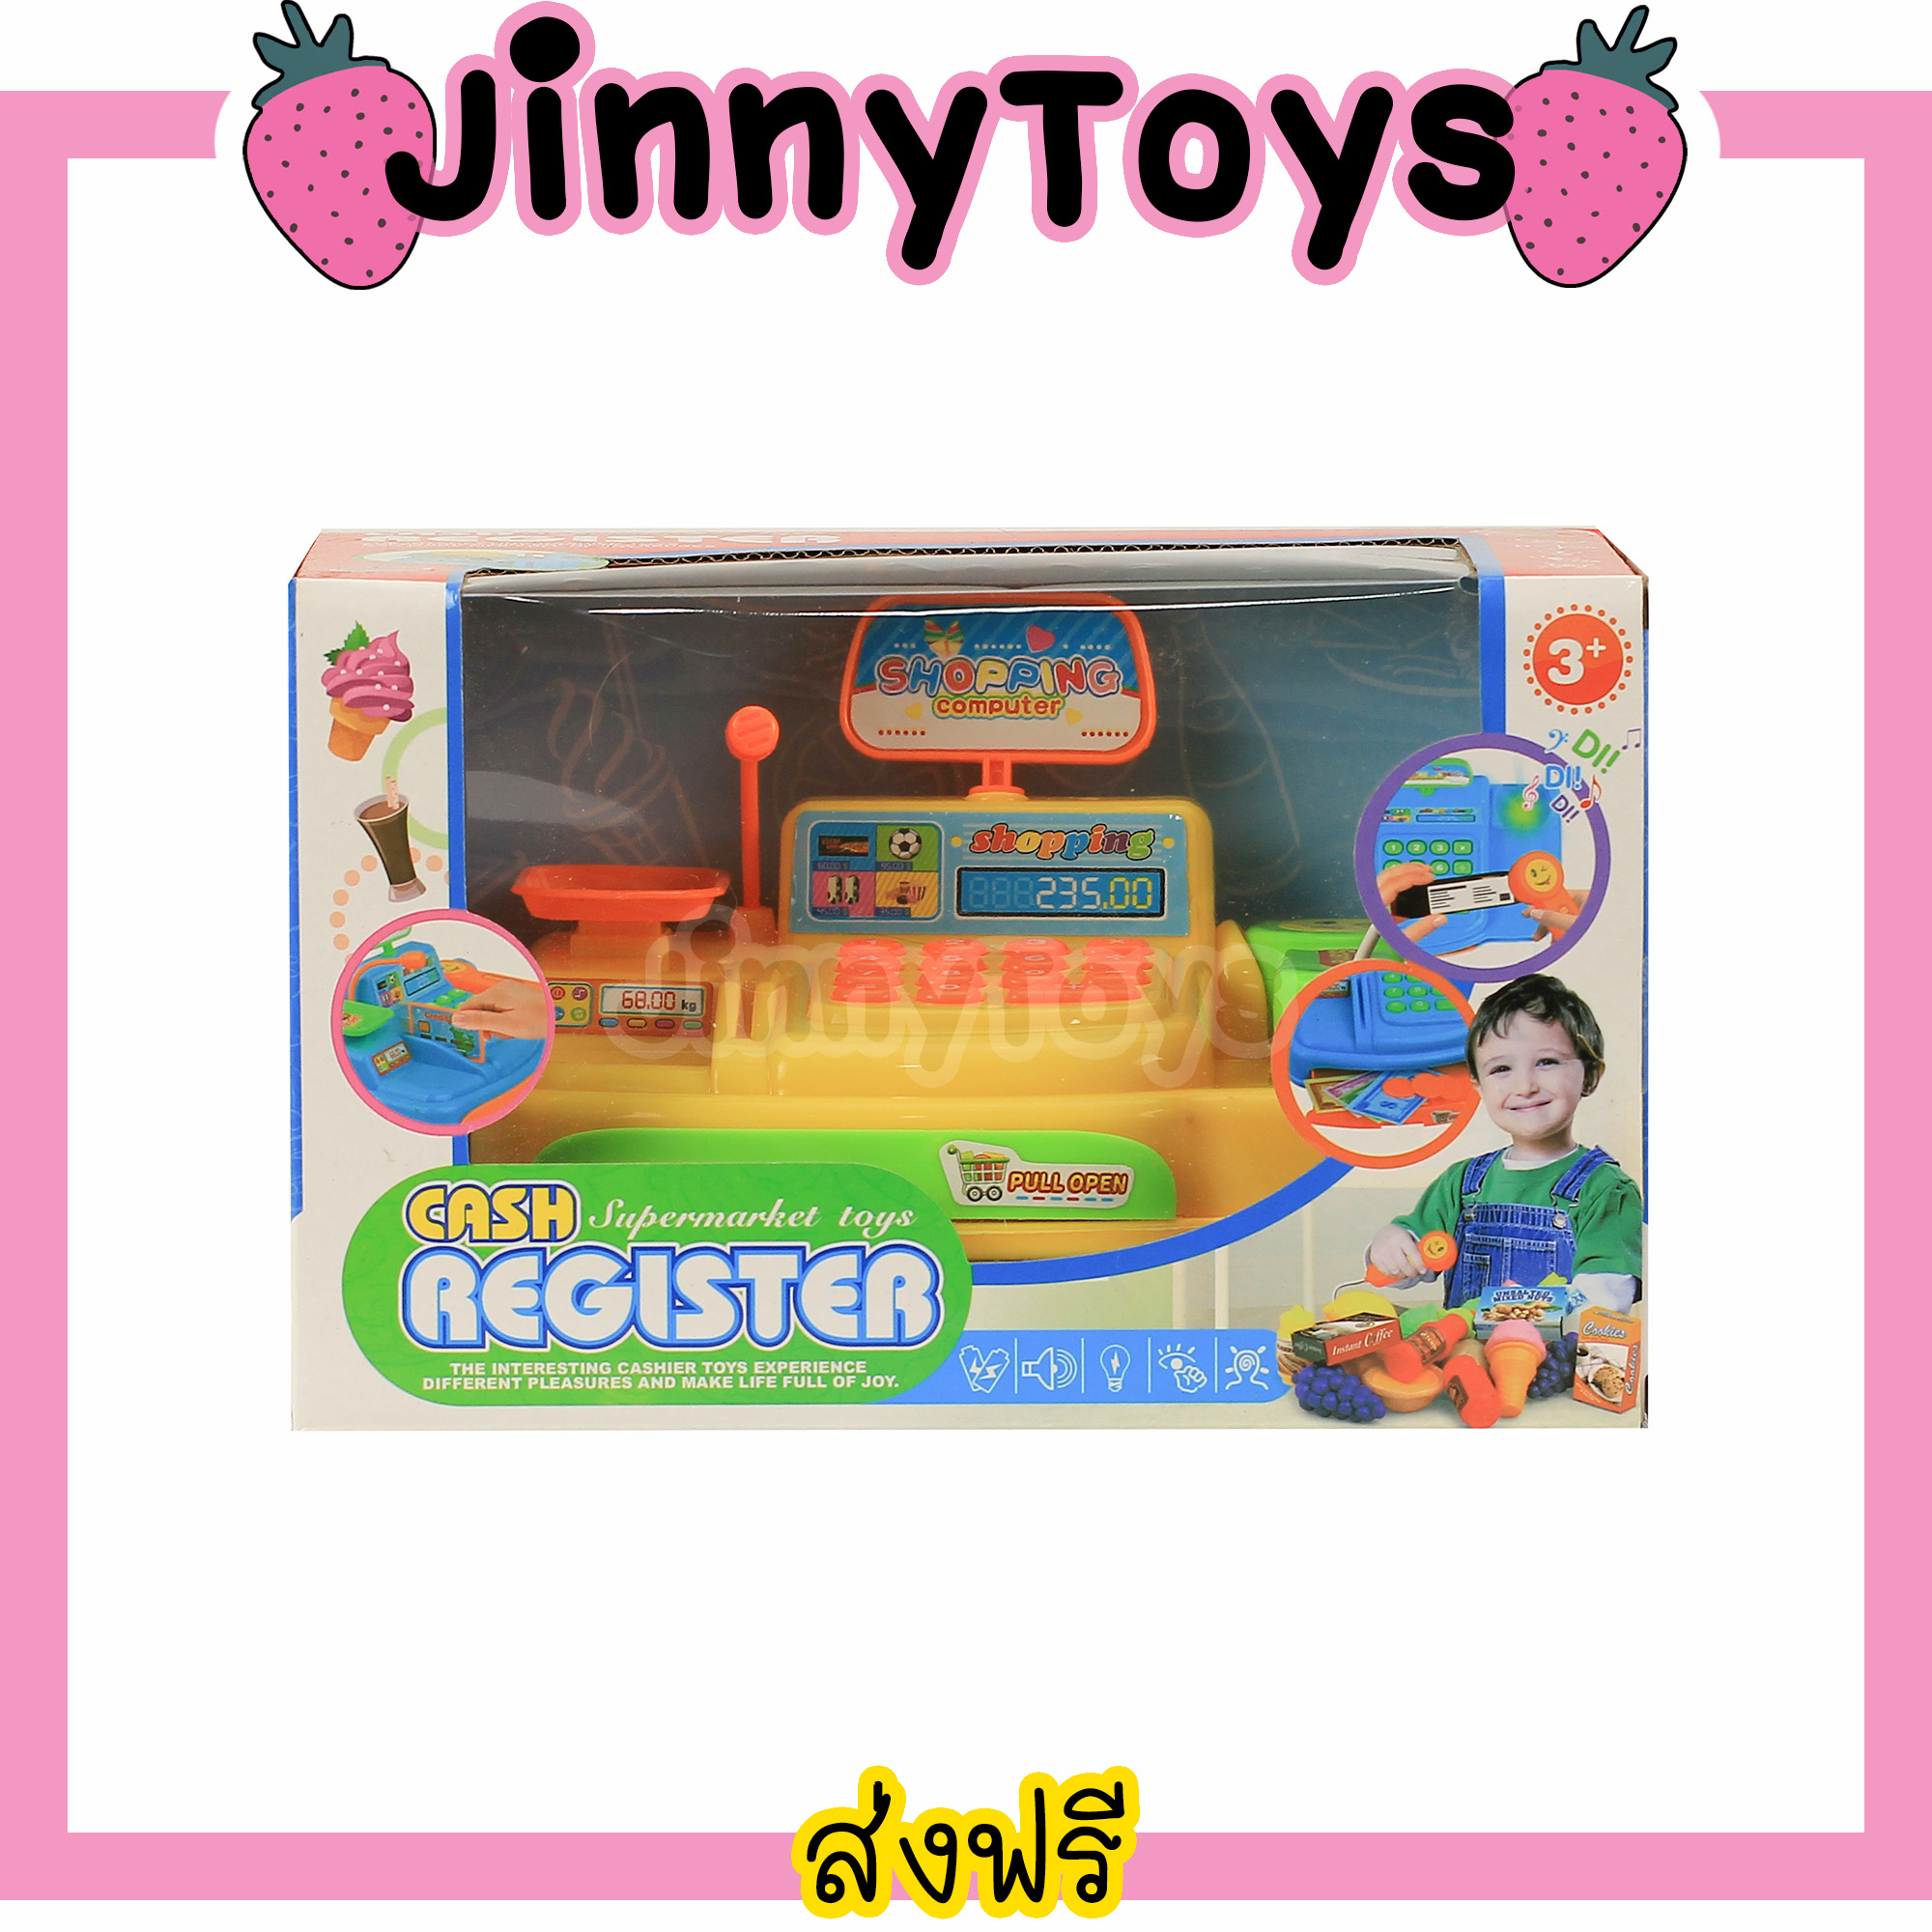 Jinny Toys ของเล่นเด็ก แคทเชียร์ ของเล่นแคชเชีย สีเหลือง Cash Register Supermarket Toys แคทเชียร์ของเล่น ของเล่นแคชเชียร์ ของเล่นซุปเปอร์มาร์เก็ต แคทเชียของเล่น แคชเชียร์เด็ก ของเล่น แคทเชีย ชุดแคชเชีย ของเล่นจำลอง ของเล่นเด็กหญิง ของเล่นเด็กผู้หญิง